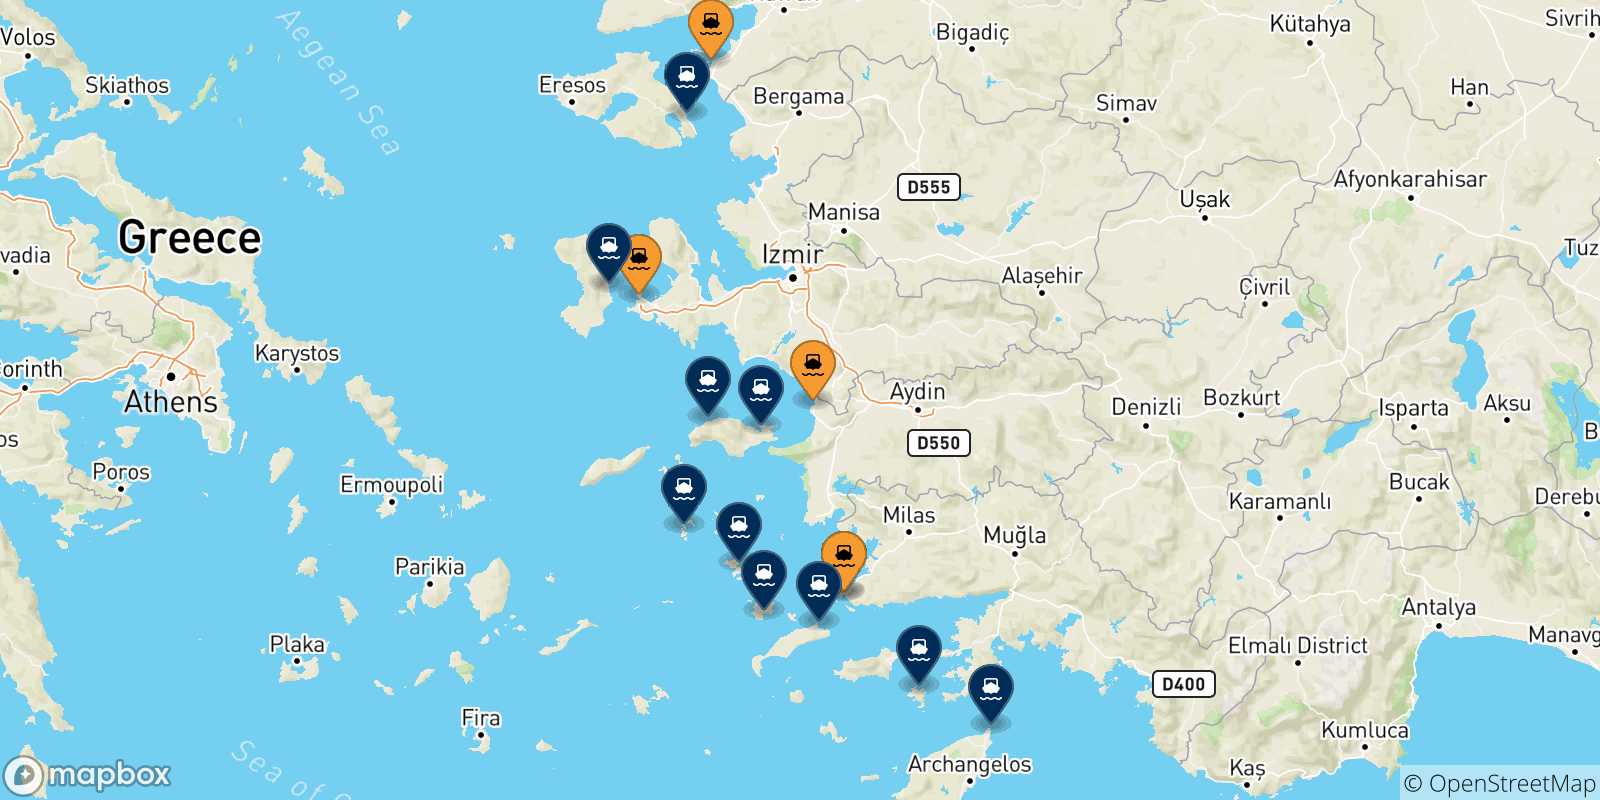 Mappa delle destinazioni raggiungibili dalla Turchia